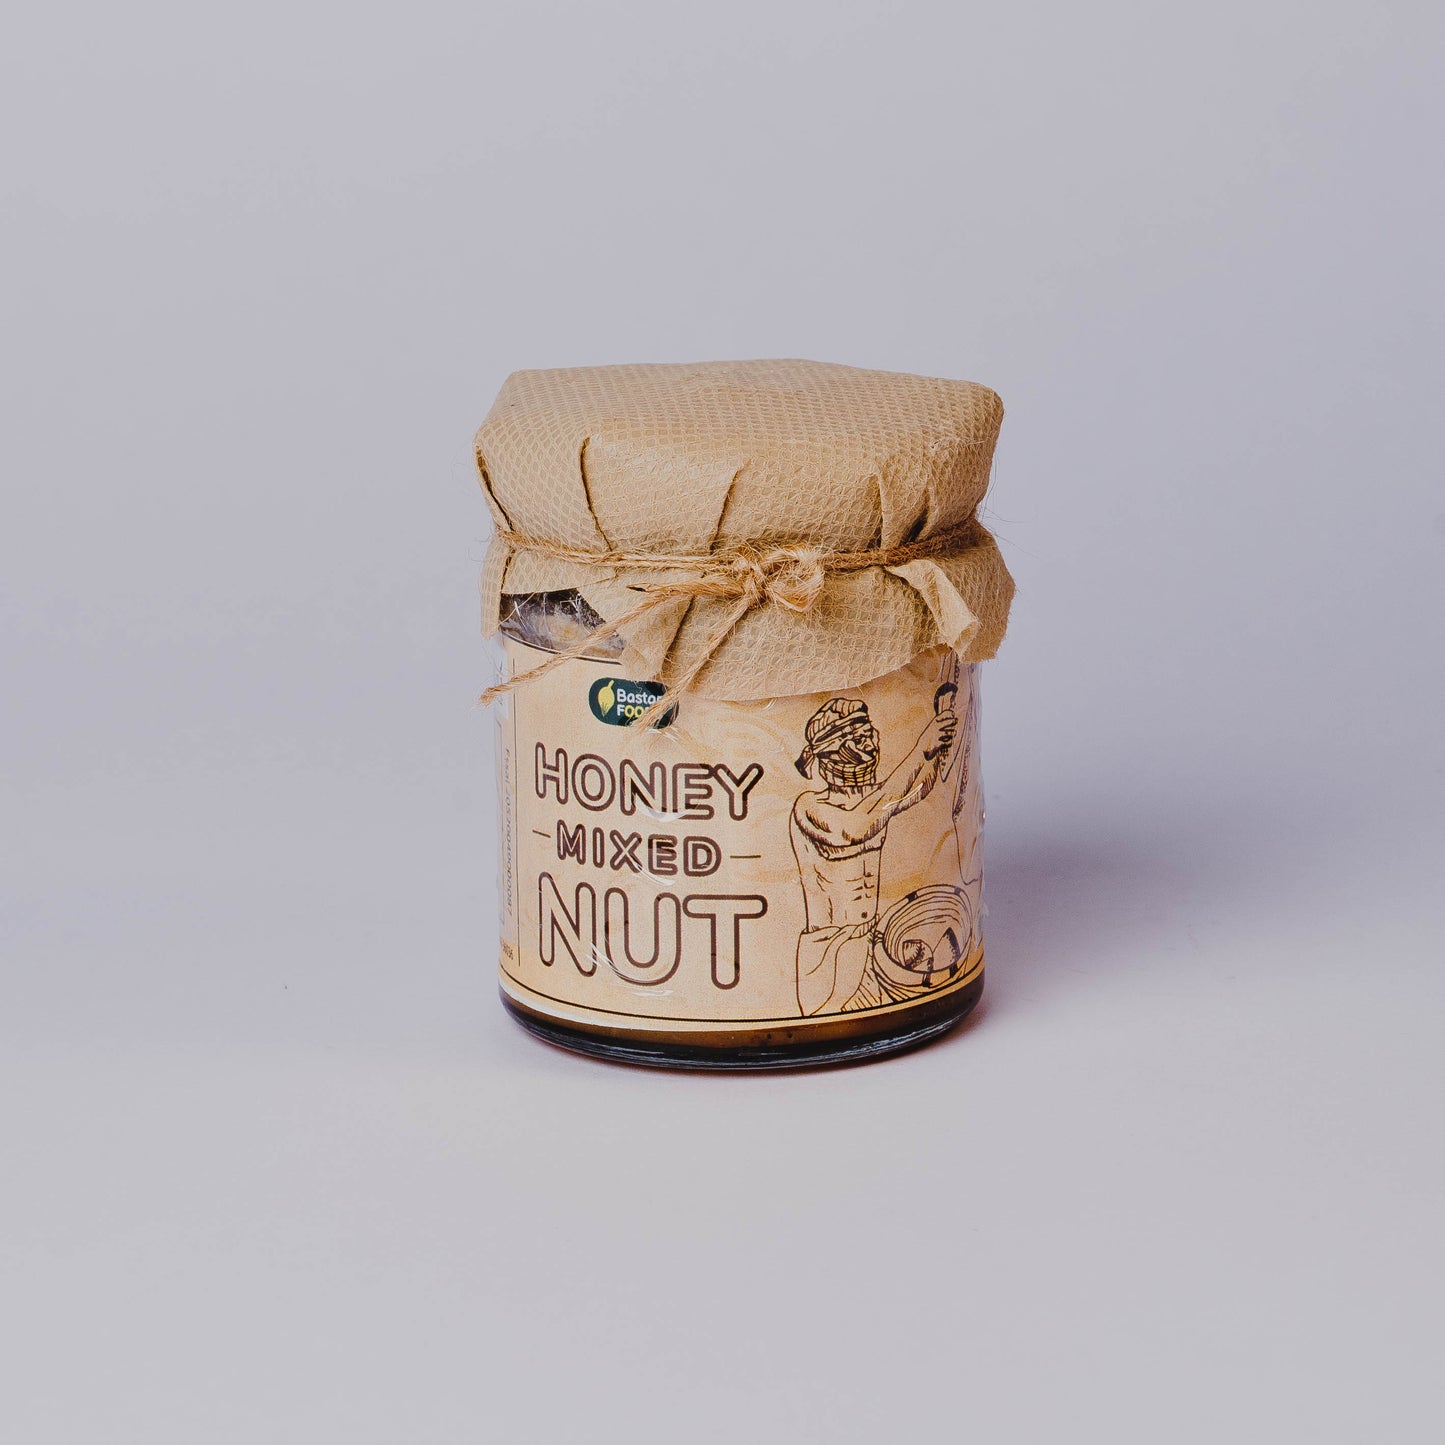 Bastar Foods Honey Mixed Nuts | 200 G